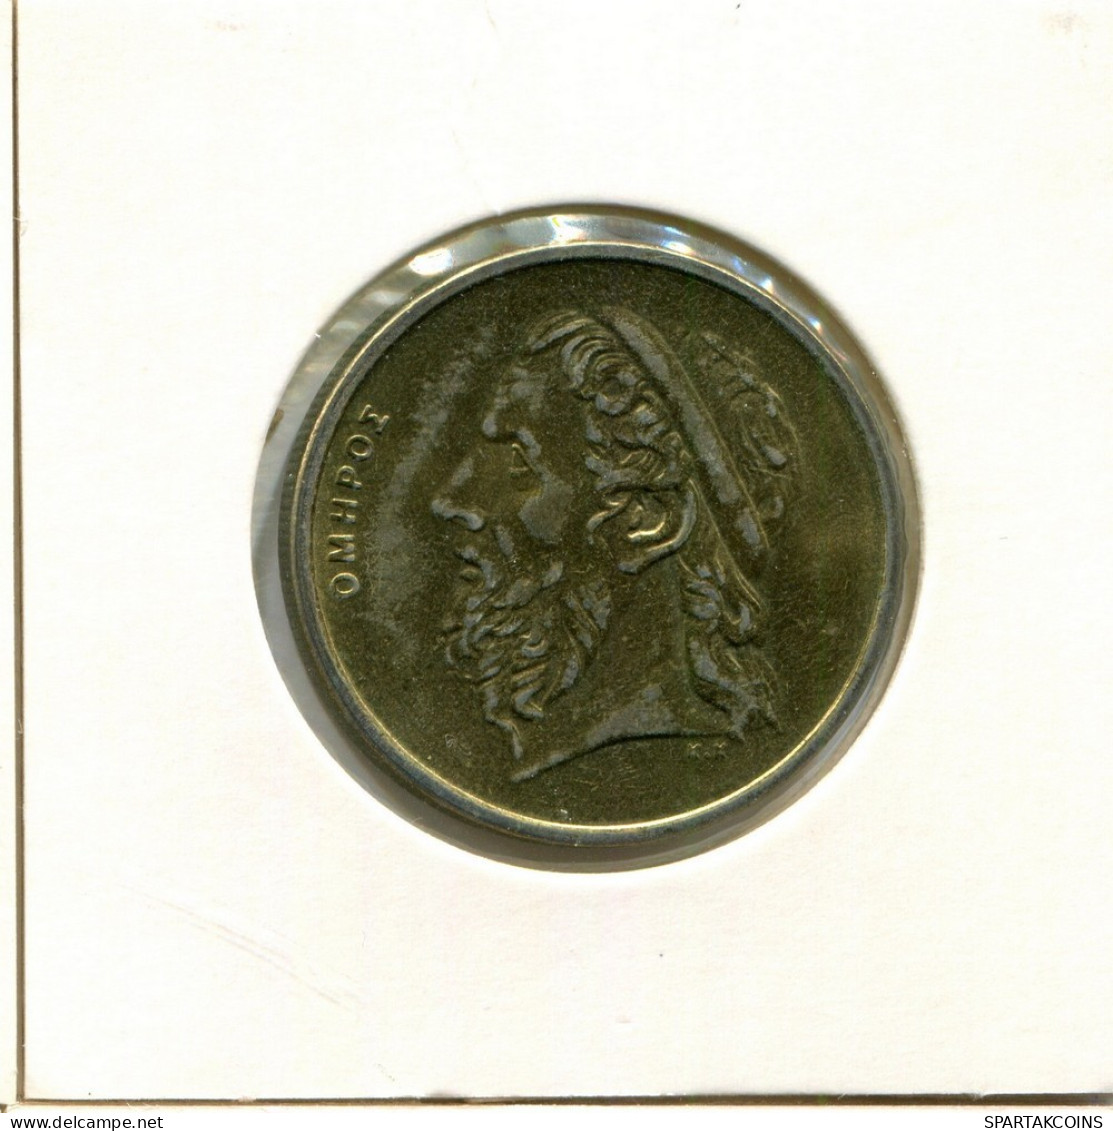 50 DRACHMES 1990 GREECE Coin #AY387.U.A - Greece